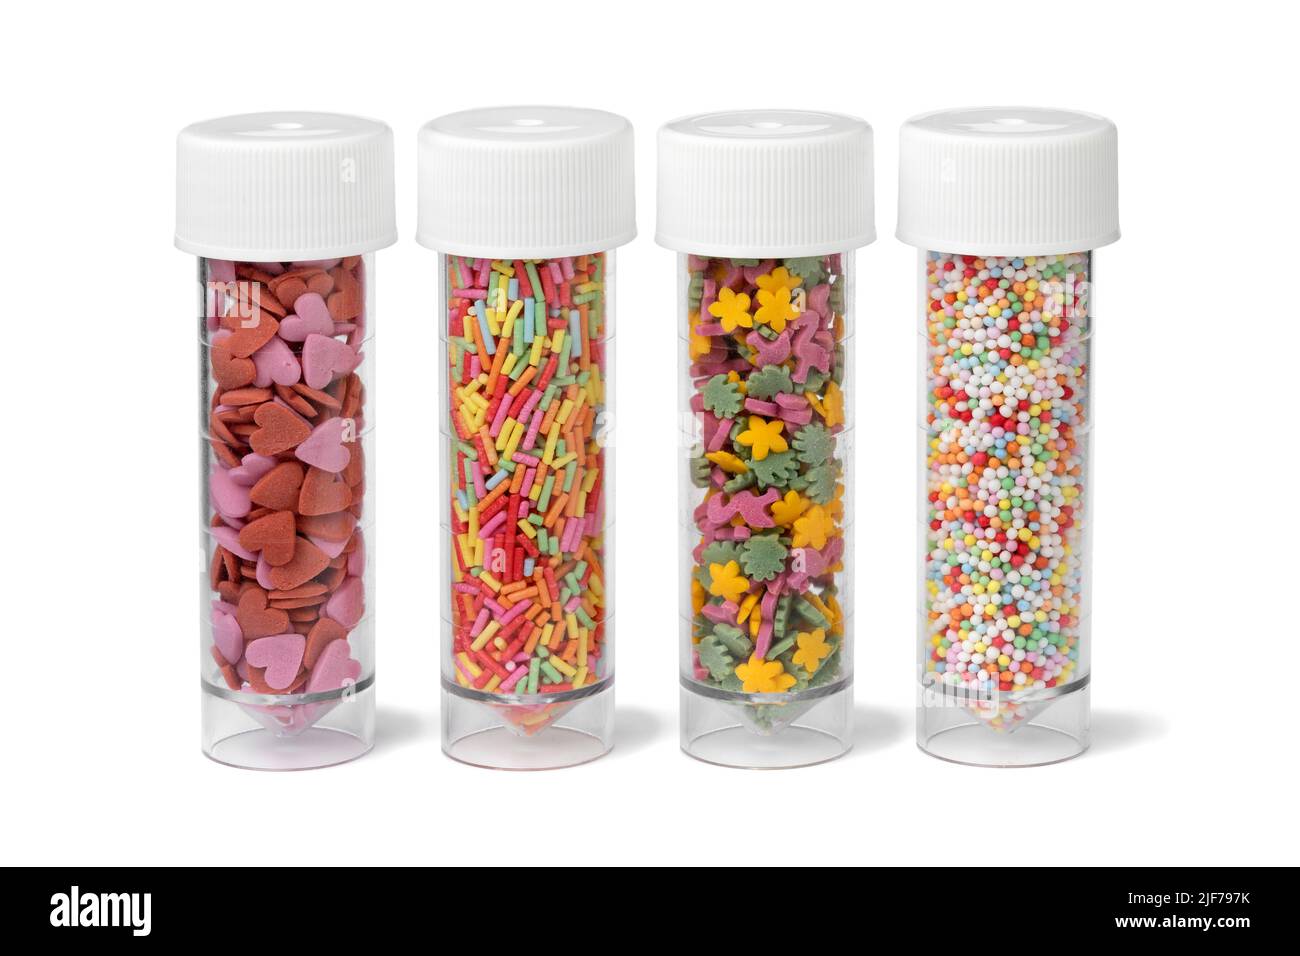 Tubi di plastica con coloratissimi spolverini di zucchero per decorare la pasta fatta in casa isolata su sfondo bianco Foto Stock